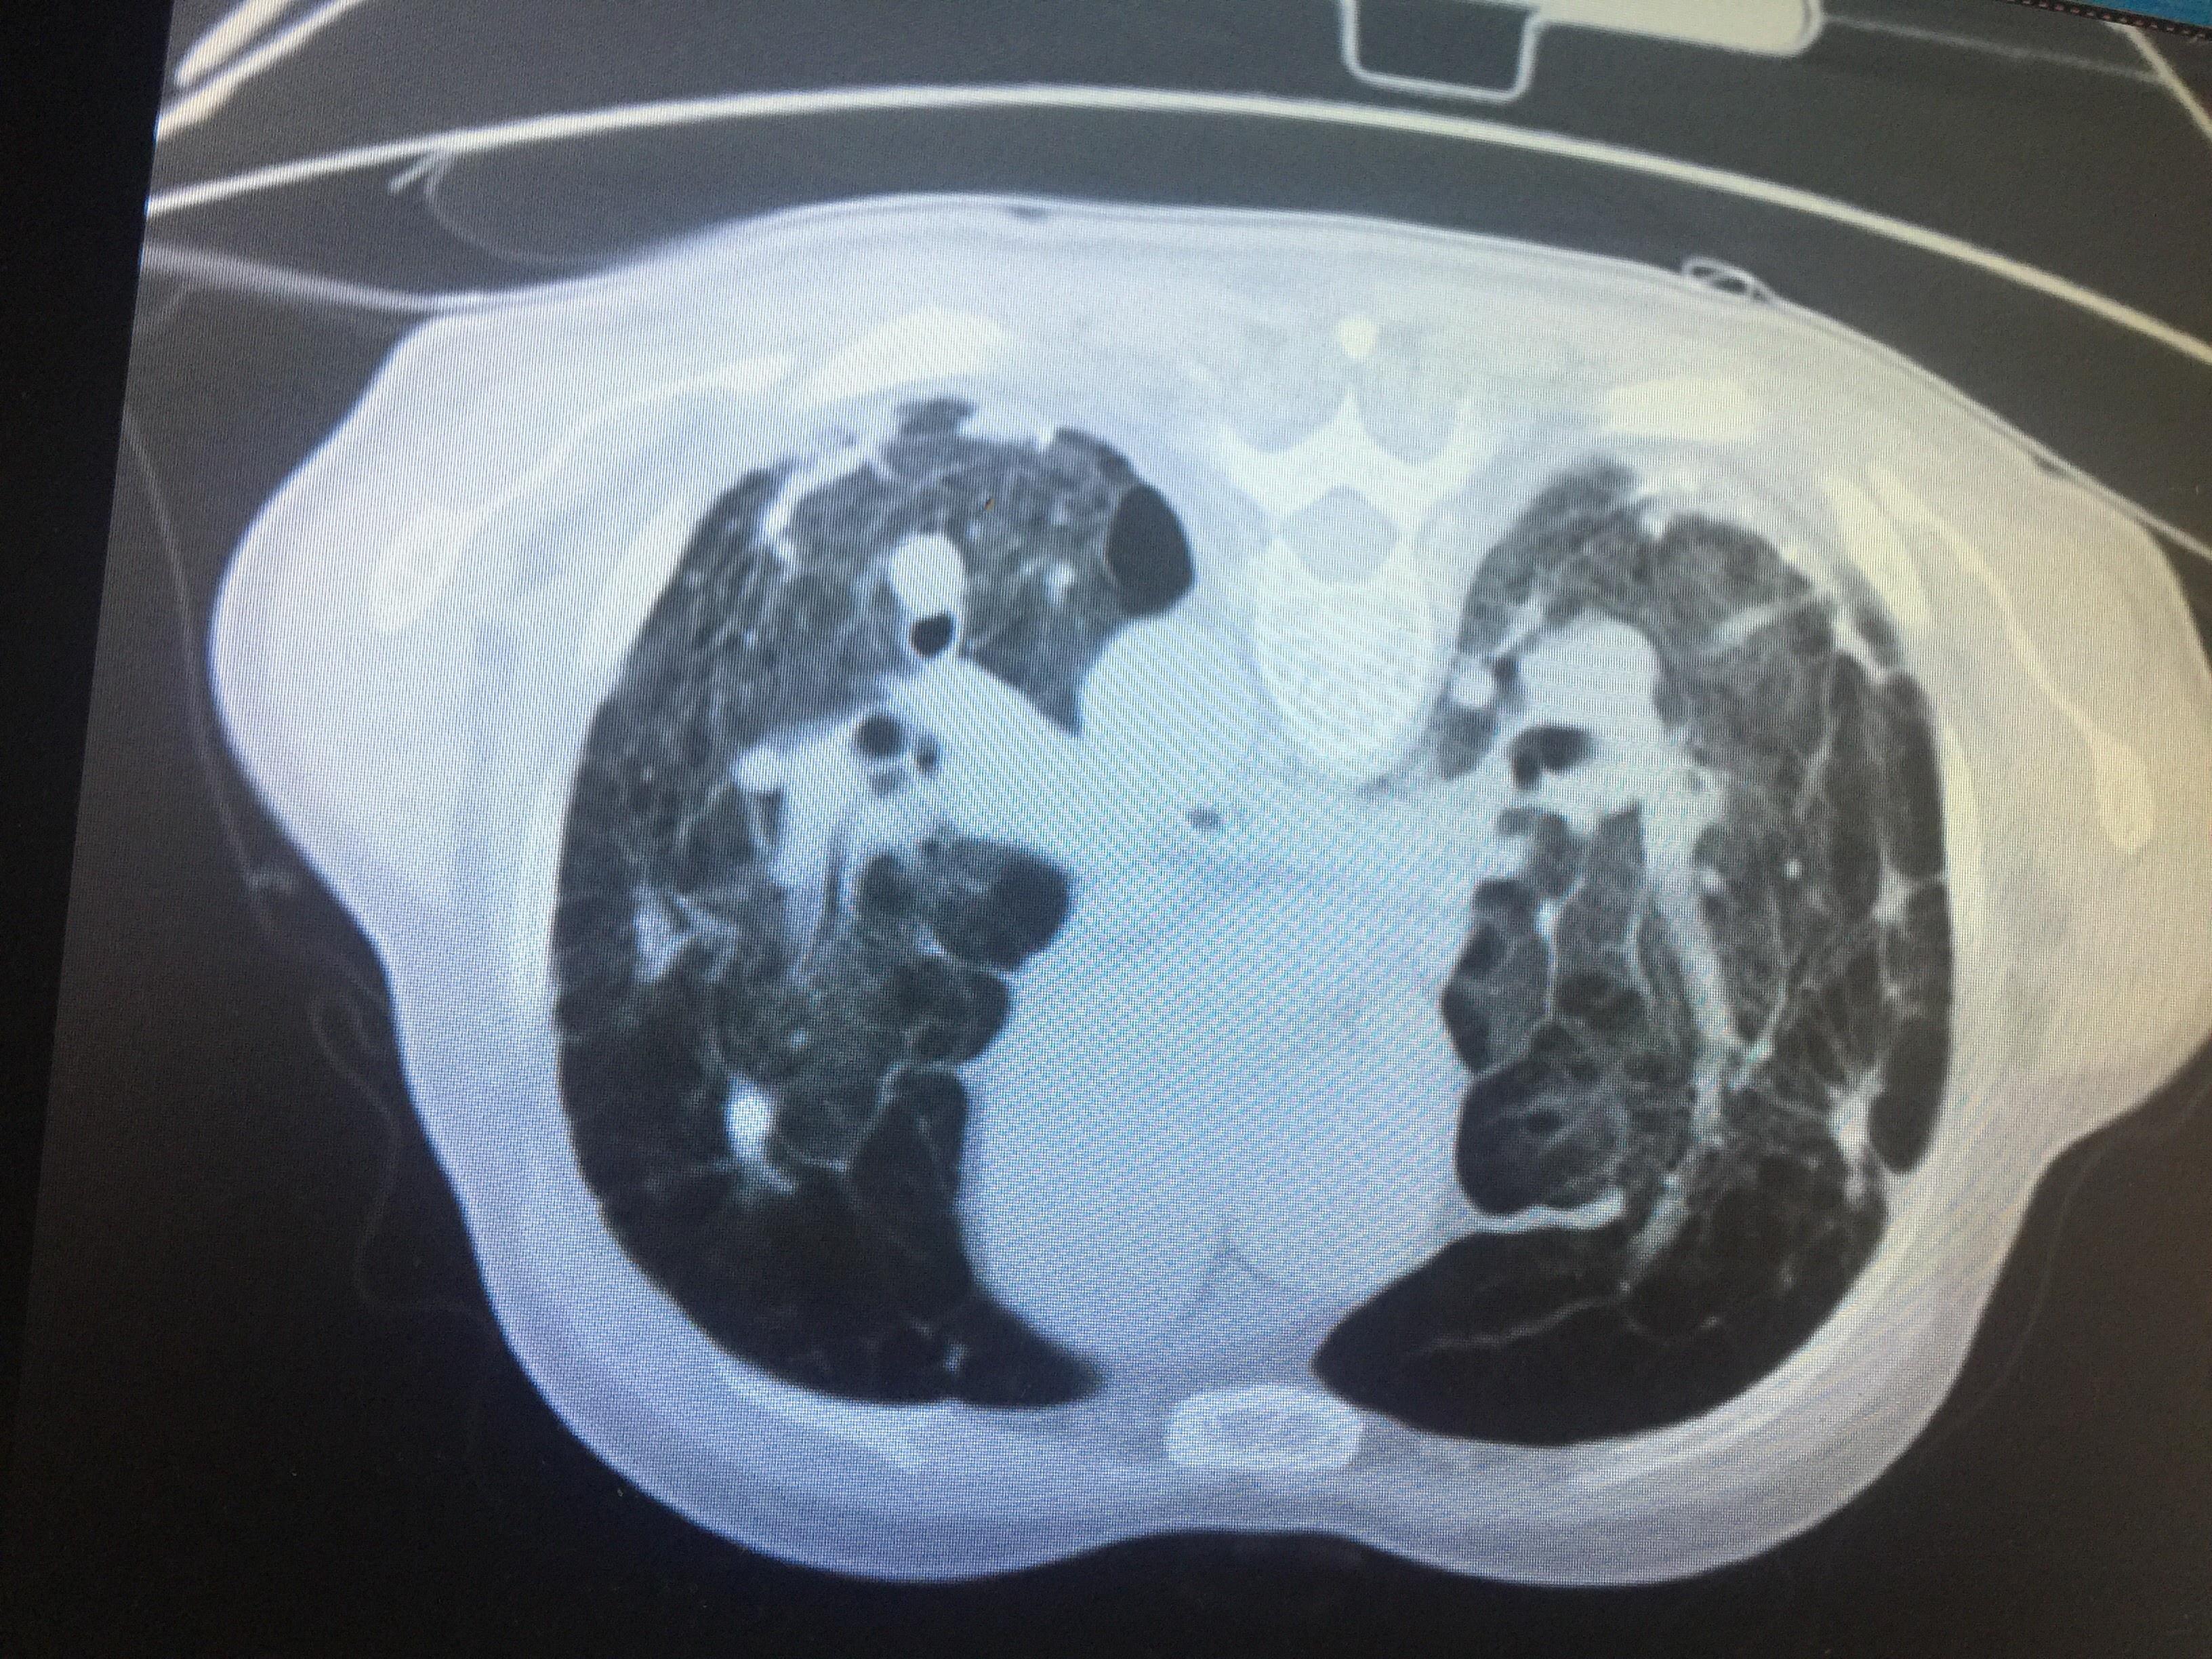 肺部 CT 阅片技巧剖析 障眼法再也不怕了 - 丁香园